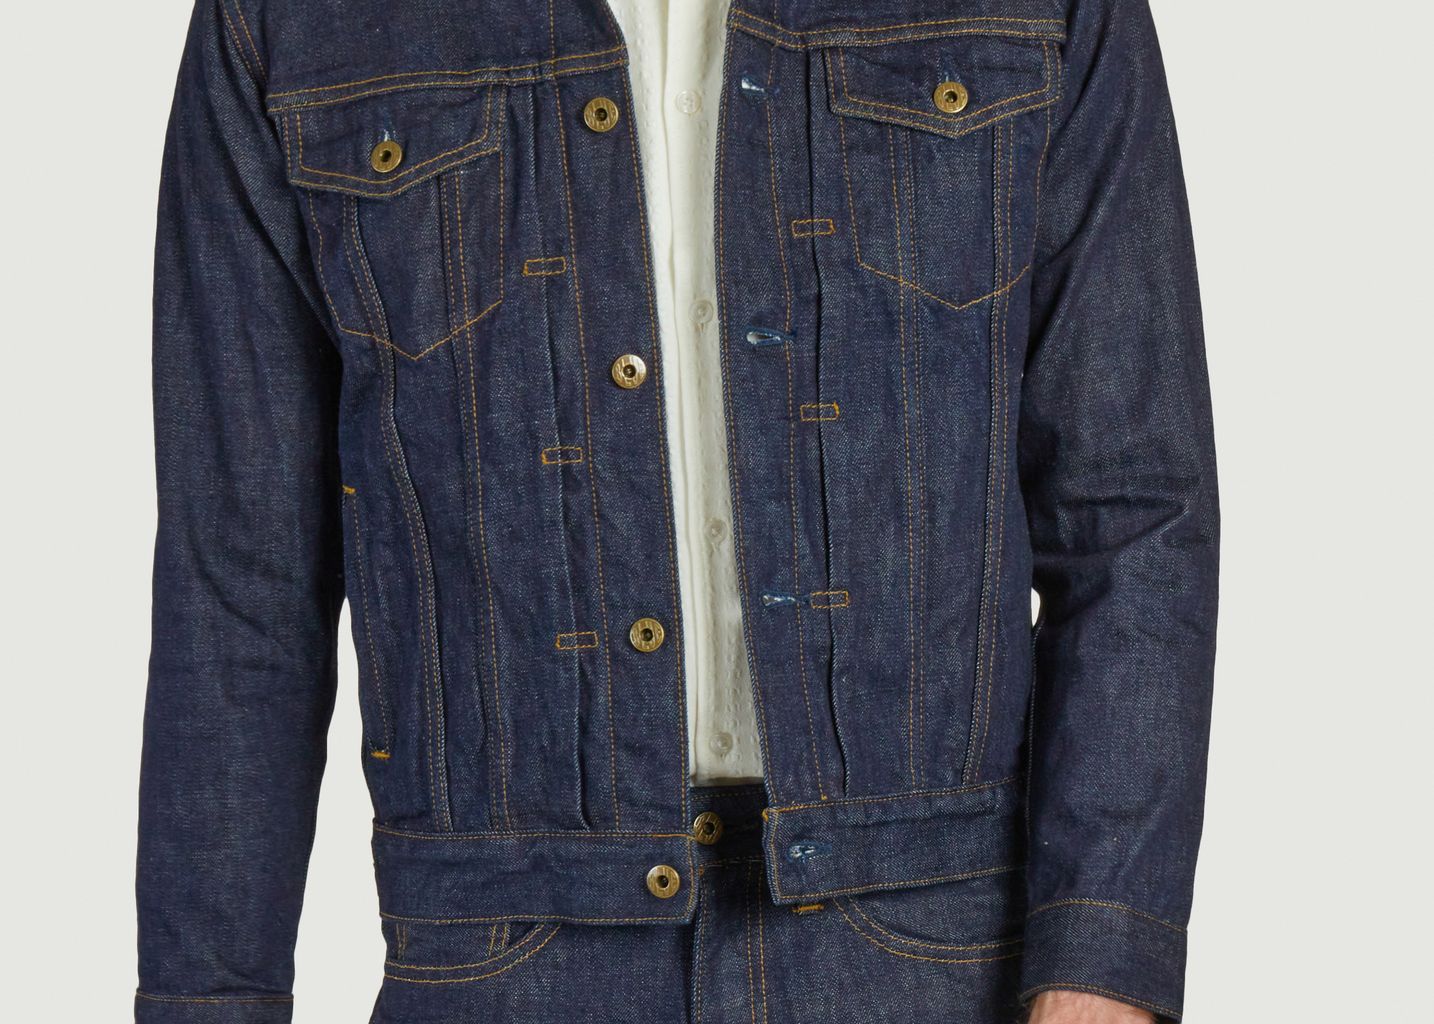 Jean jacket 12.5oz type 4 - Japan Blue Jeans